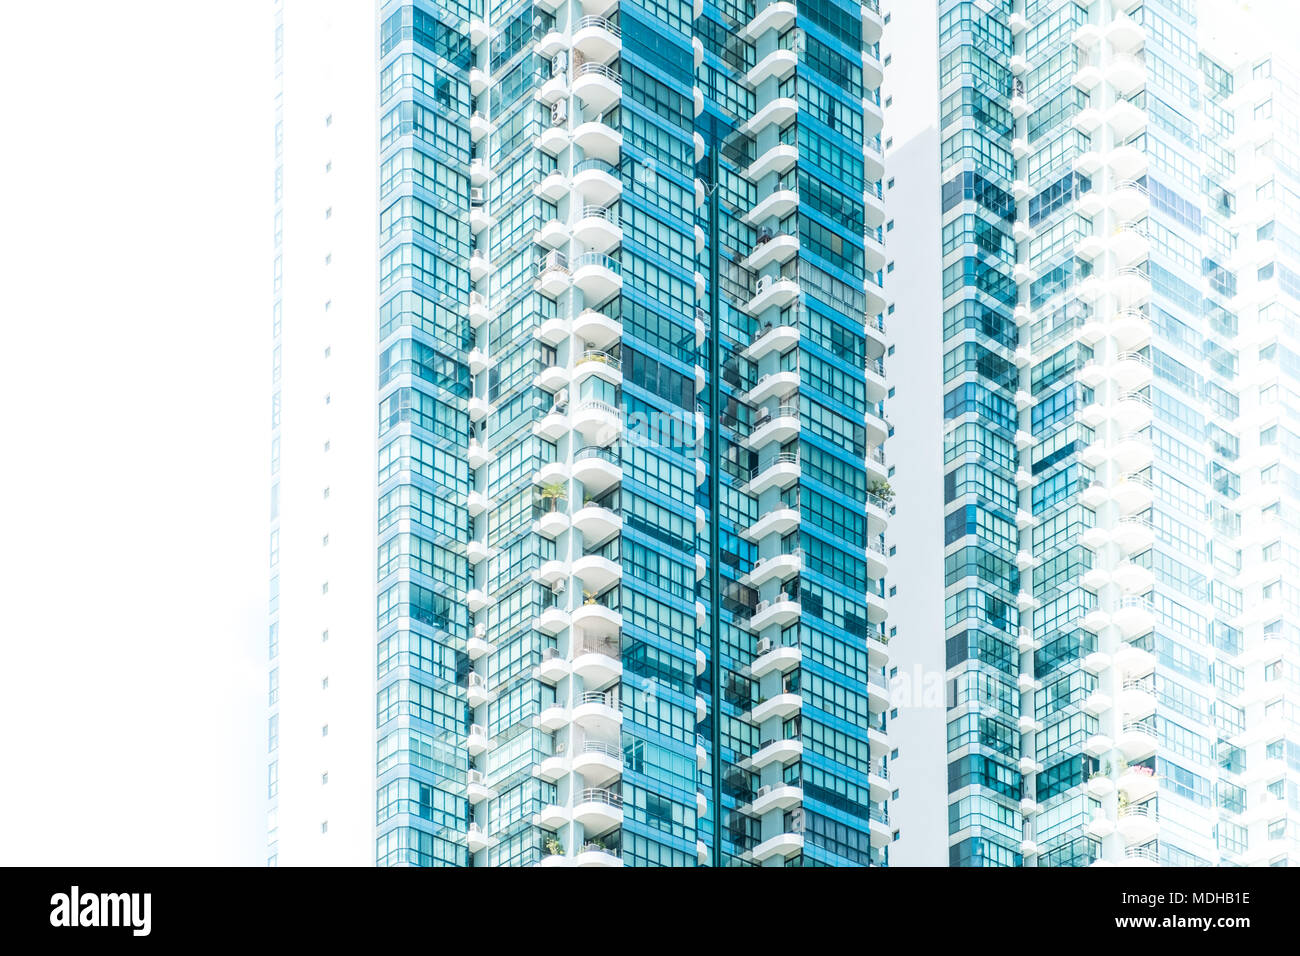 Gratte-ciel moderne d'extérieur de bâtiment - abstract concept immobilier Banque D'Images